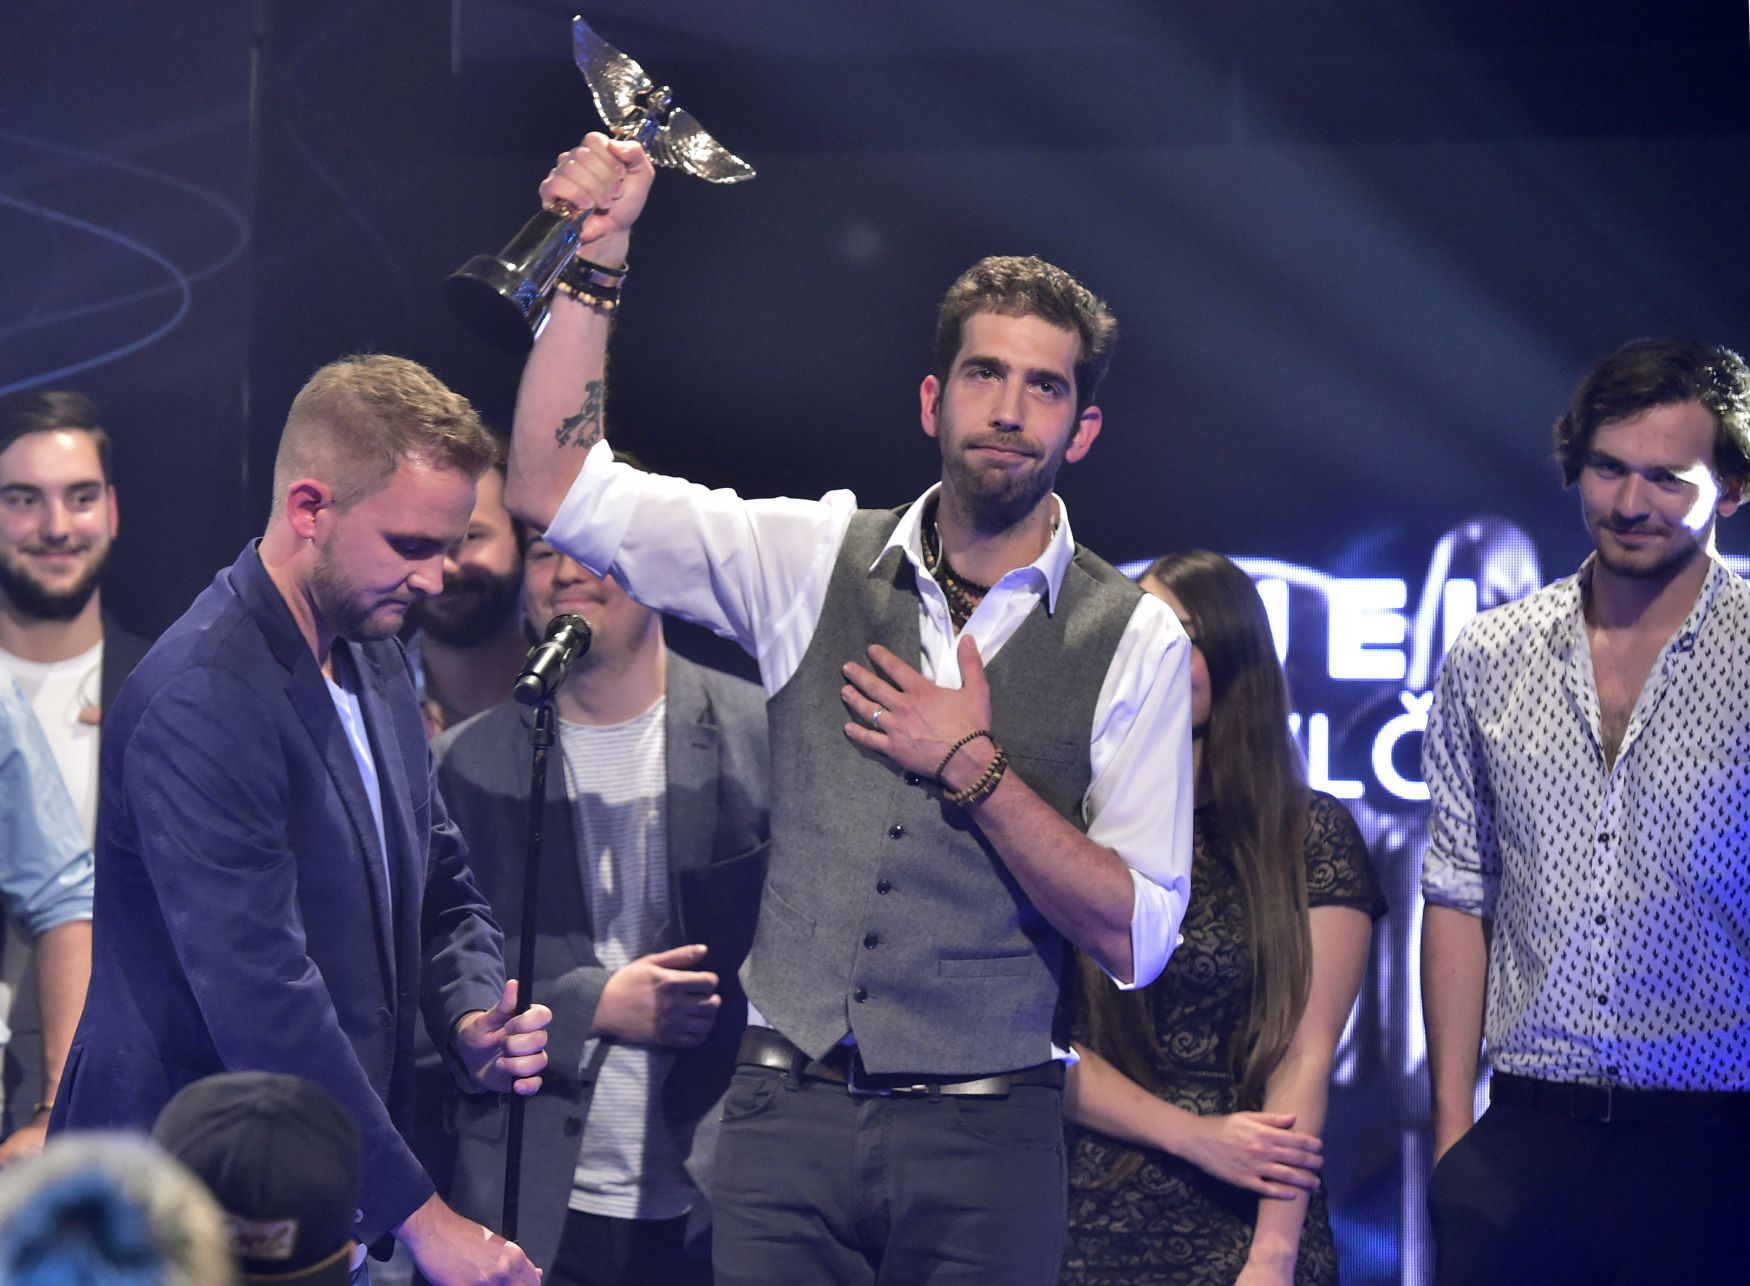 Czech band Jelen: Anděl award winner for best album of 2016 | Radio ...